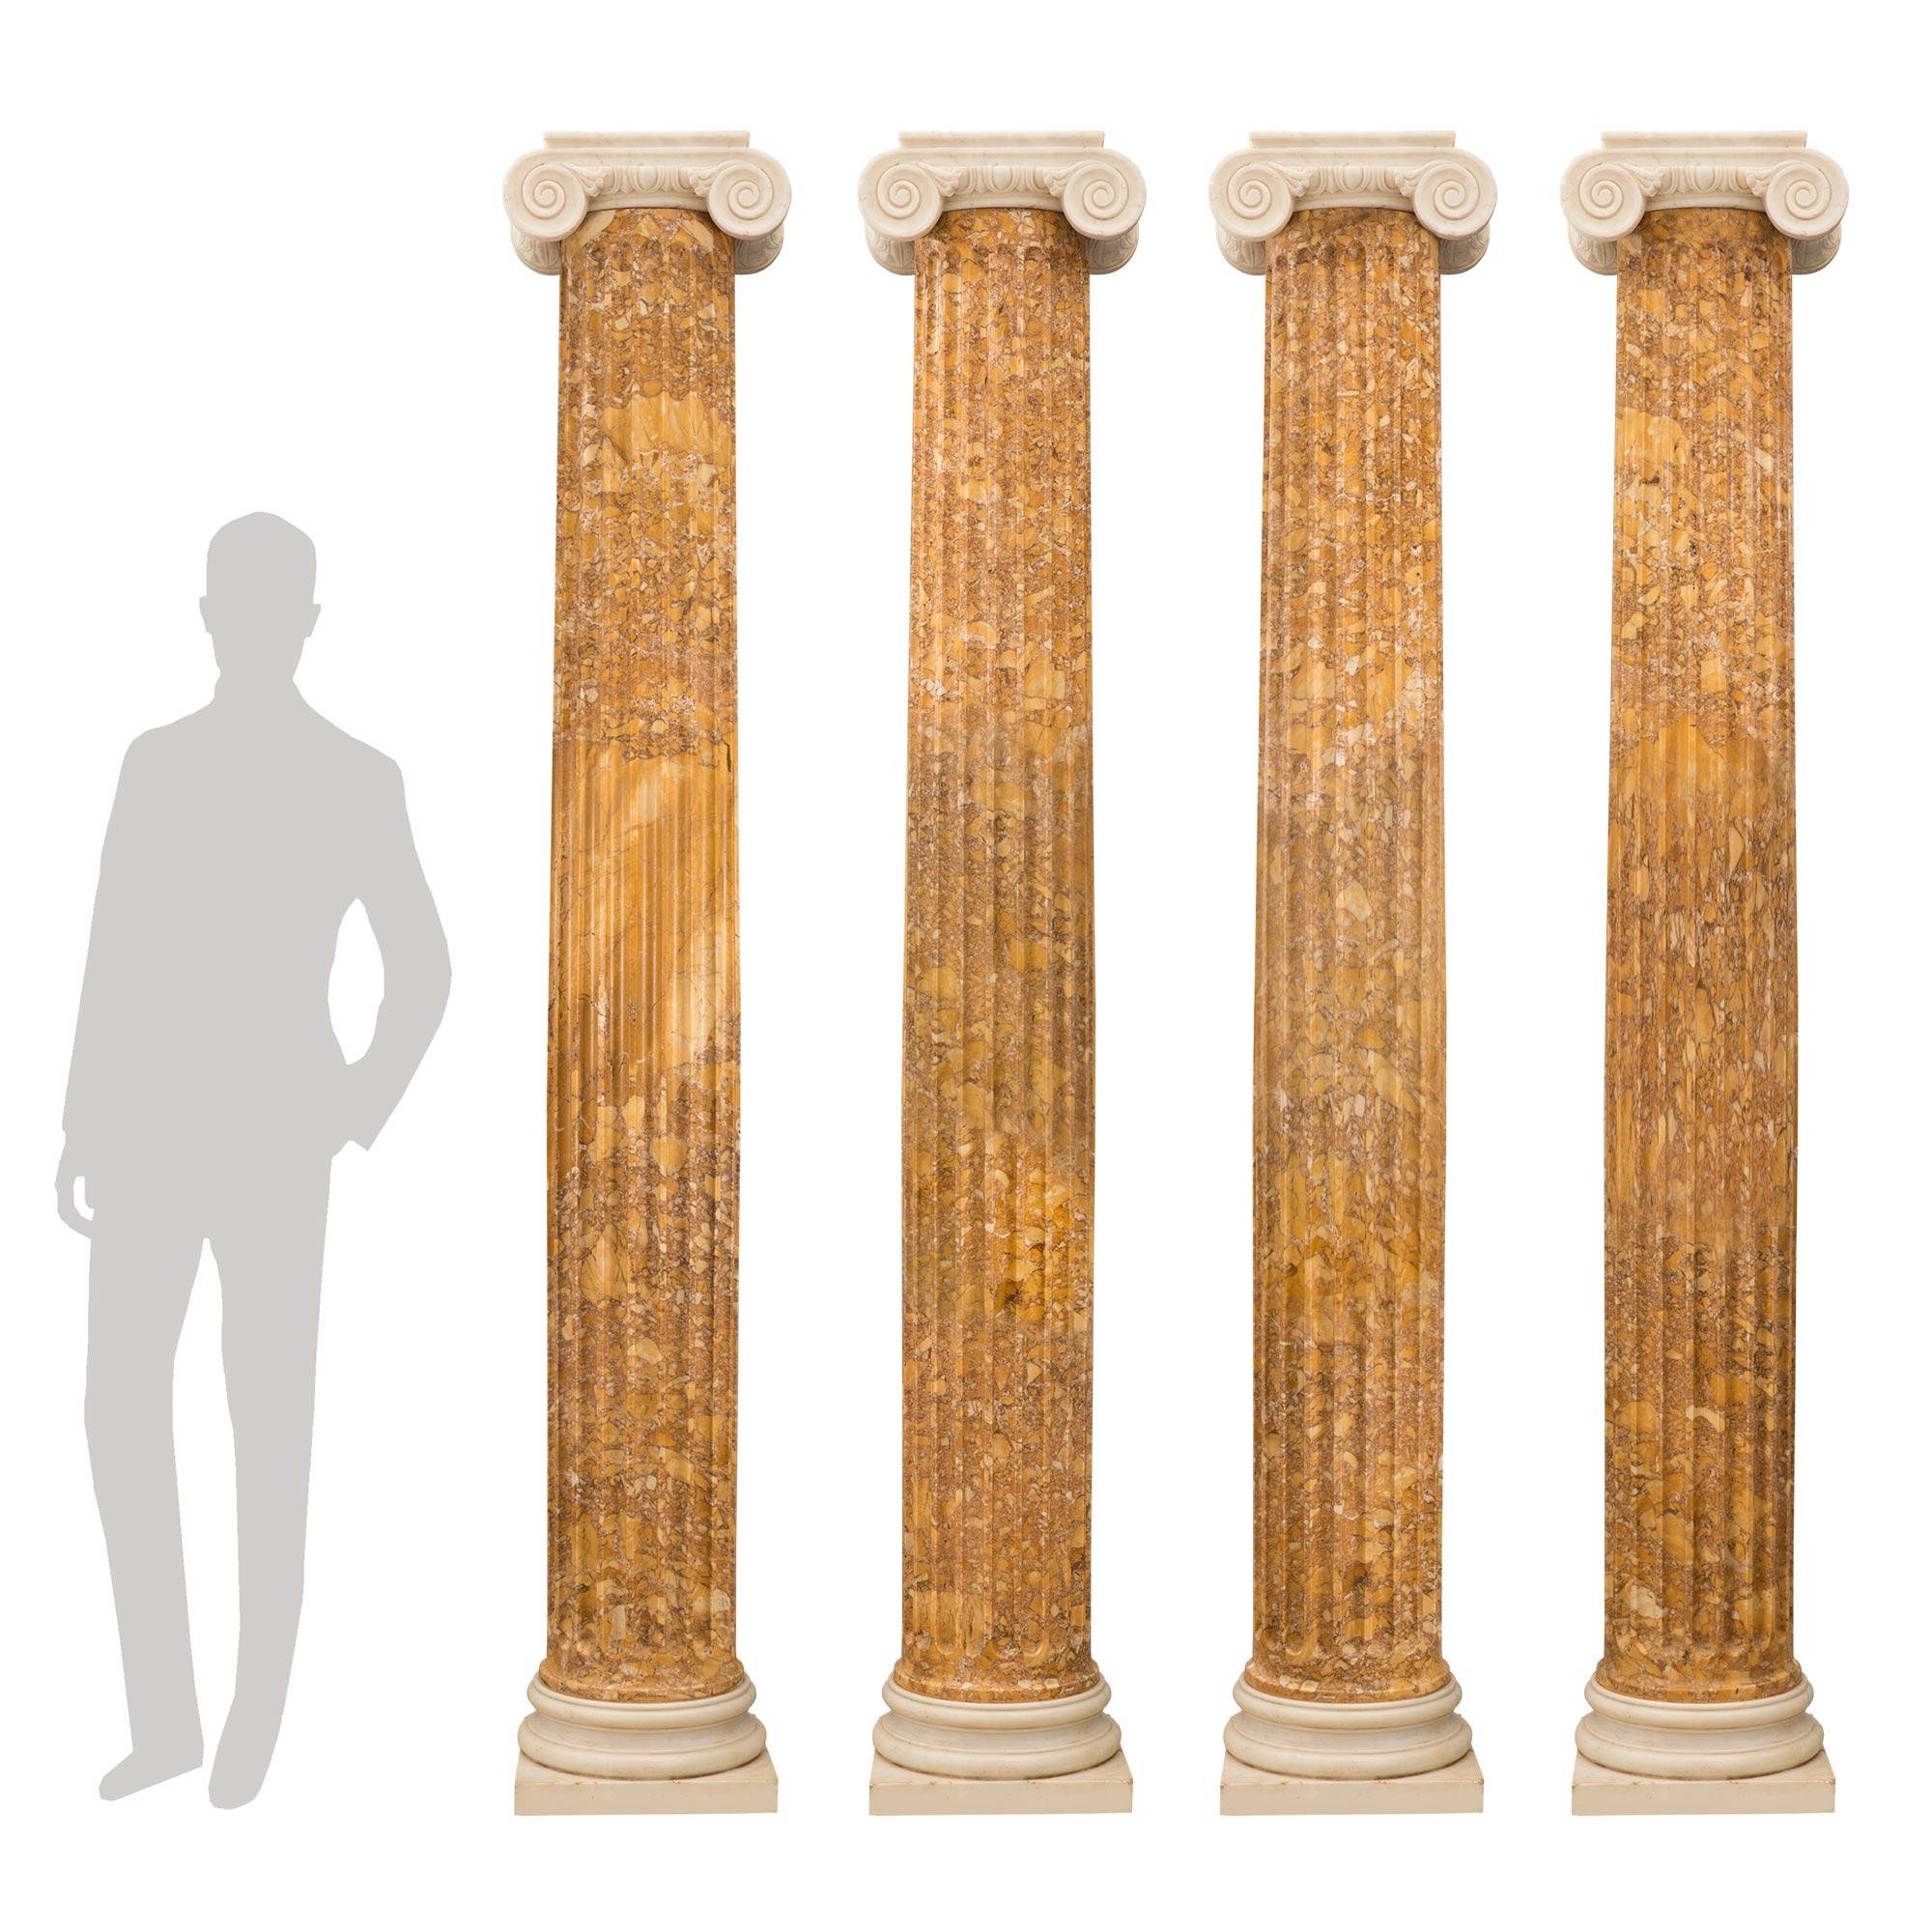 Un ensemble sensationnel et monumental de quatre colonnes ioniques architecturales italiennes de style Louis XVI du XIXe siècle en marbre de Sienne et de Carrare blanc. Chaque colonne à l'échelle palatiale est surélevée par une base carrée en marbre